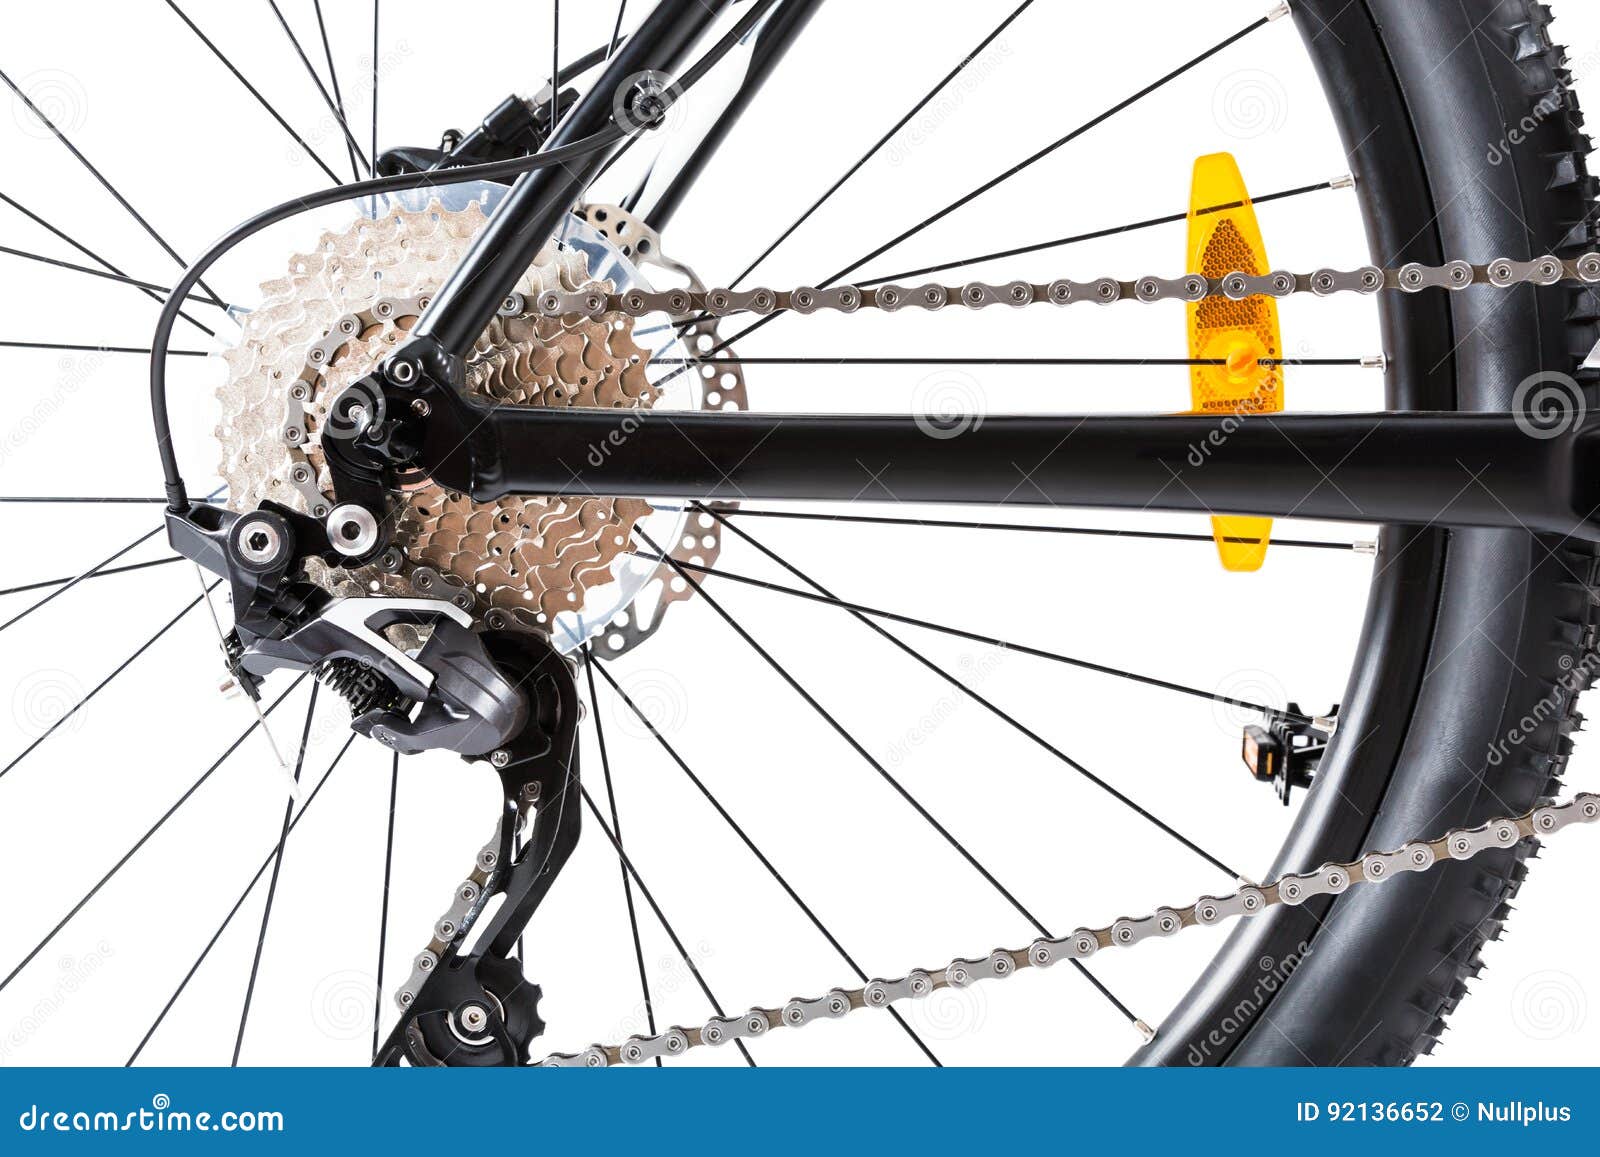 Сколько стоит заднее колесо на велосипед. Велосипед Nordway заднее колесо. Велосипед крупным планом. Заднее колесо горного велосипеда. Горный велик заднее колесо.